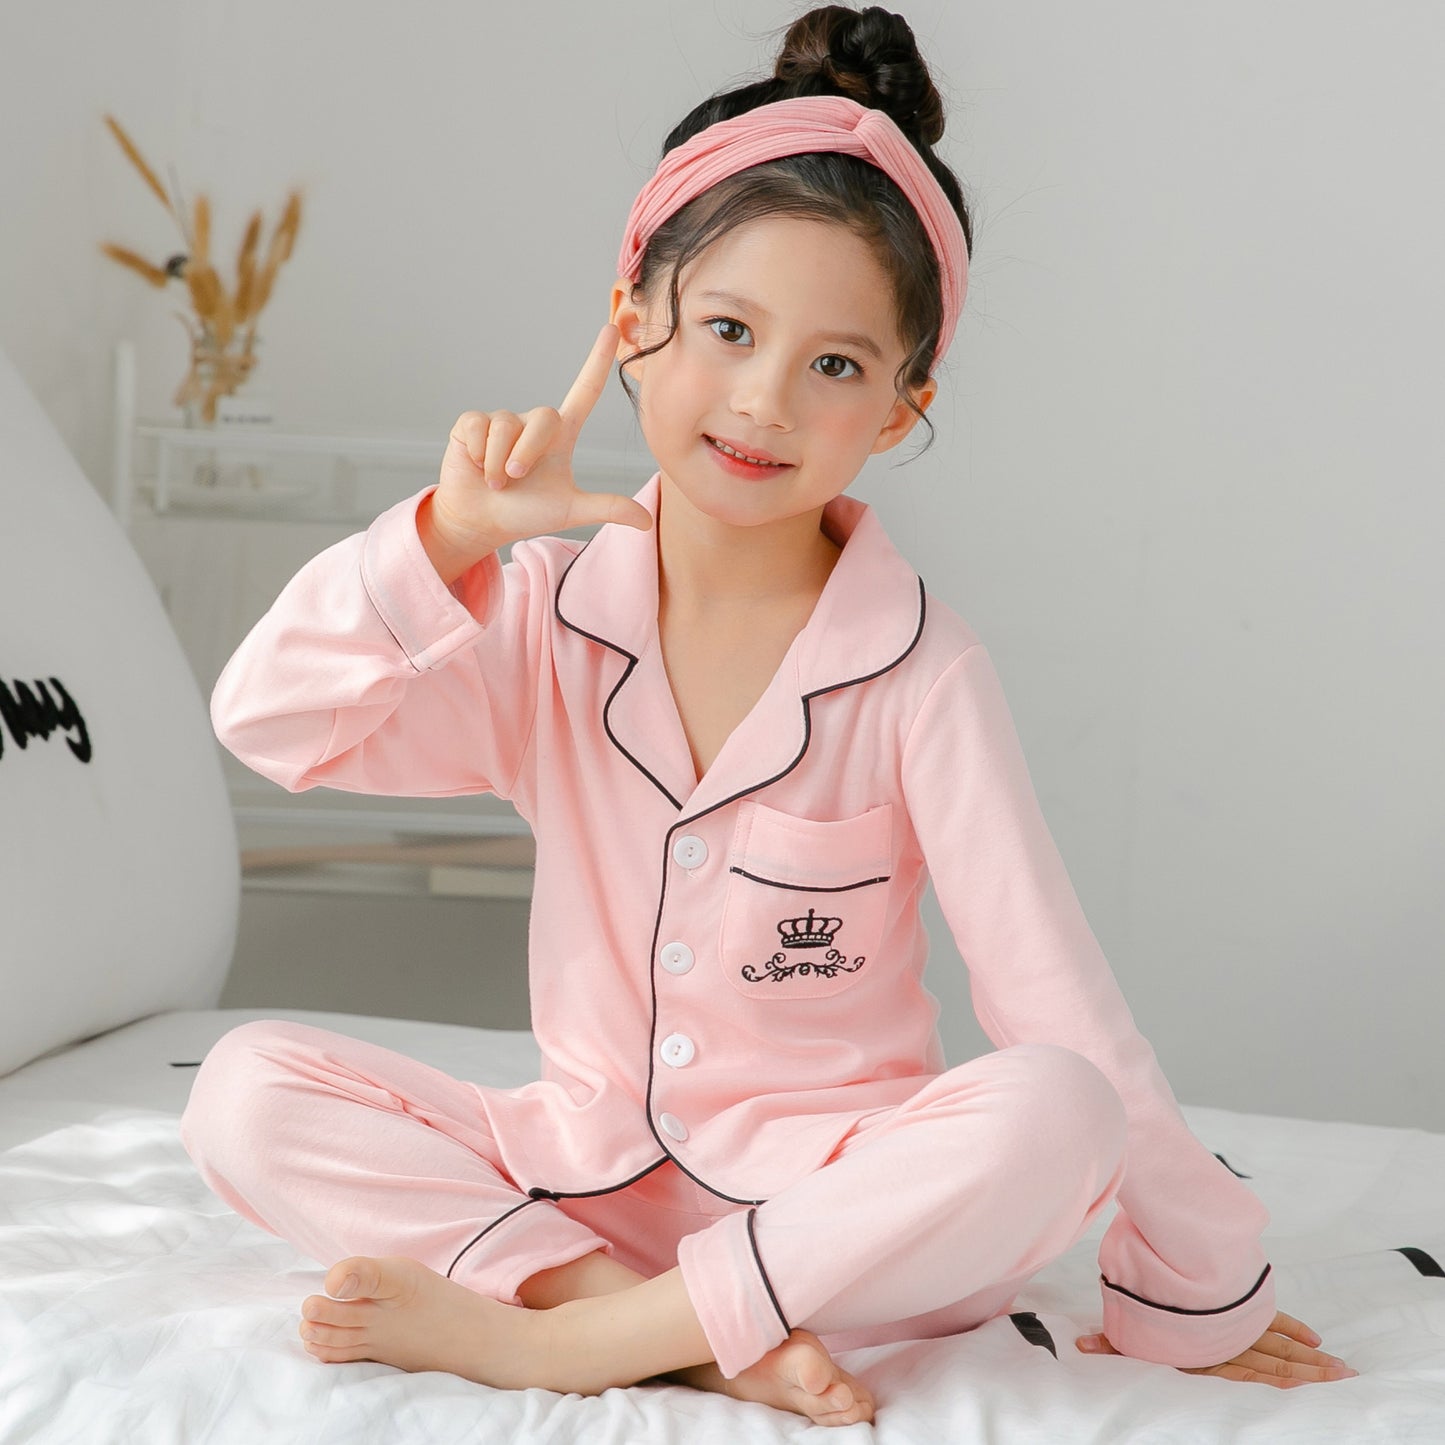 Baumwollpyjama für Kinder